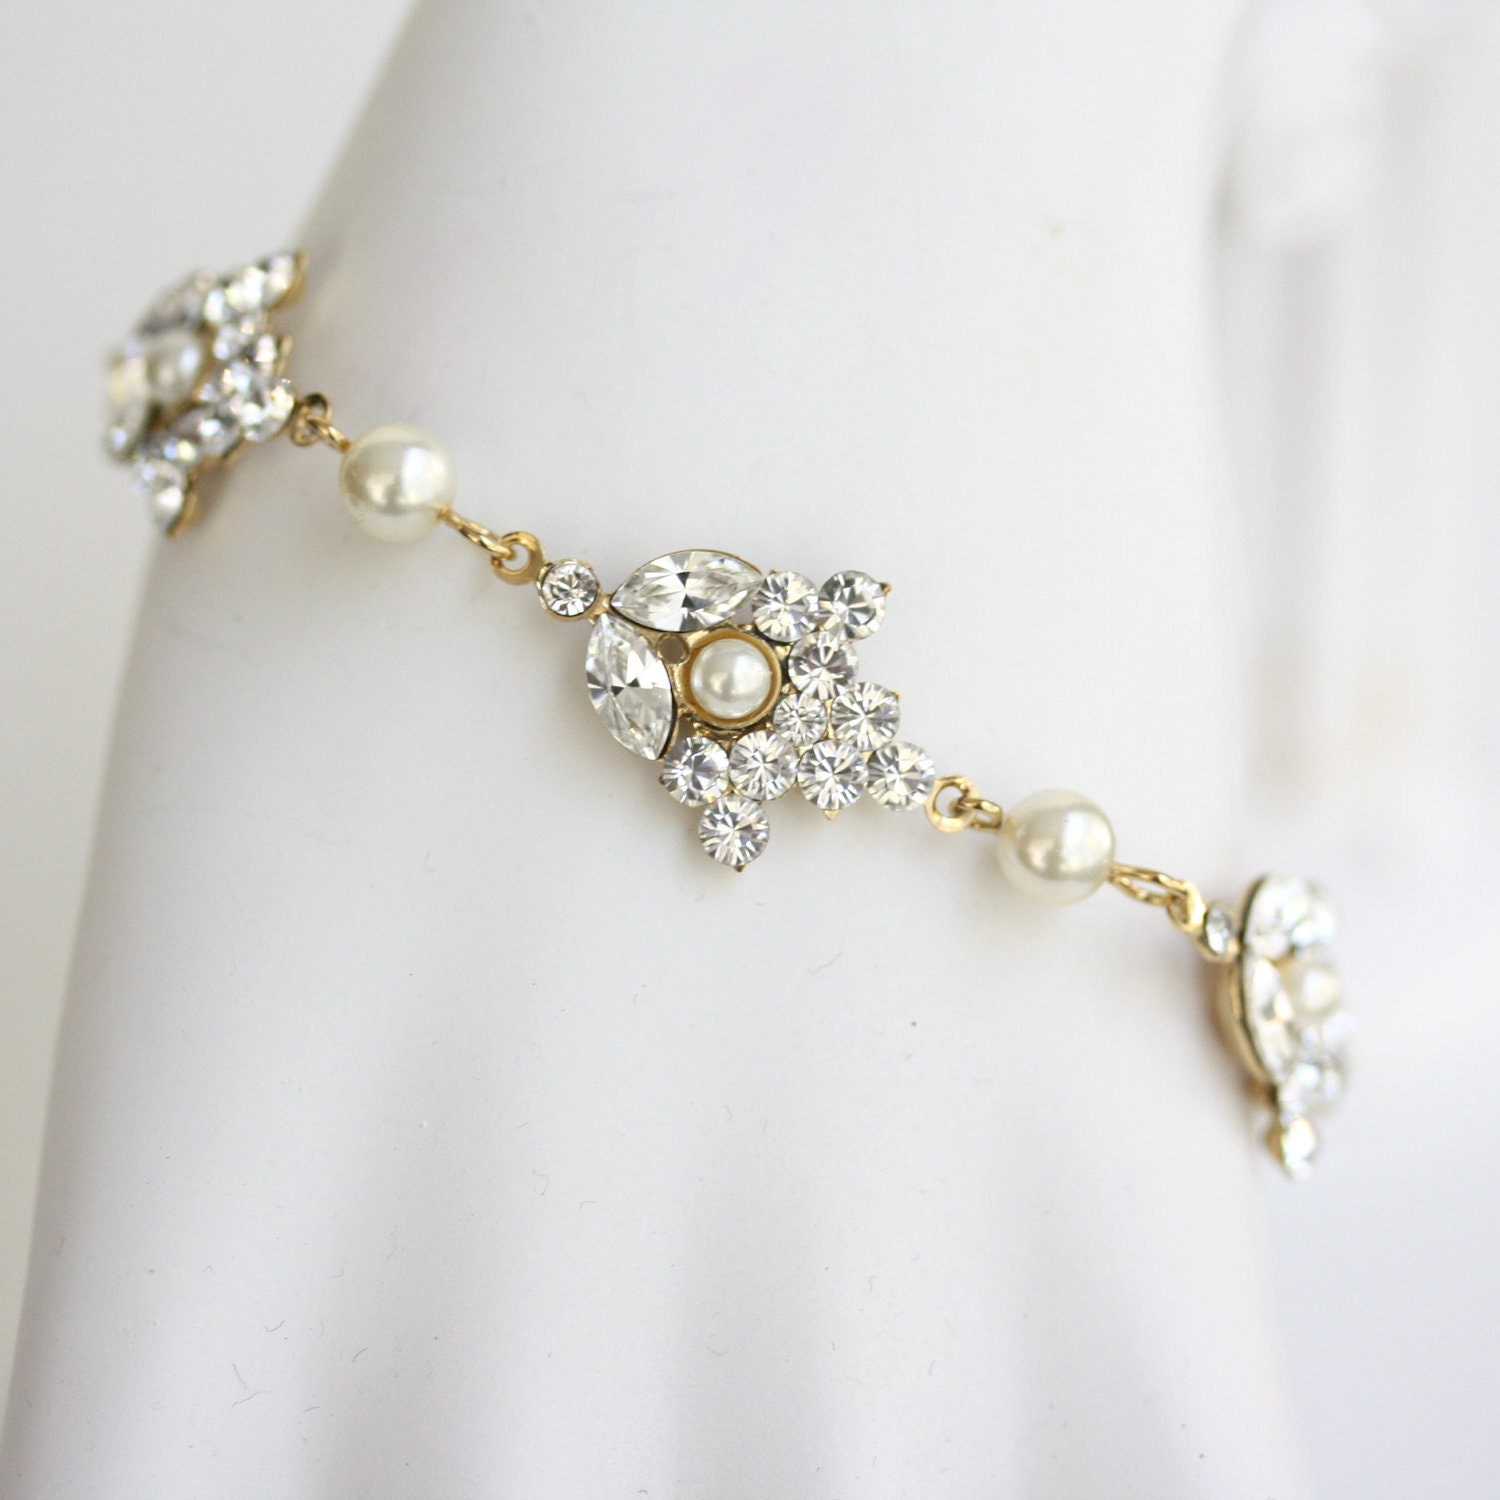 Gold Wedding Bracelet, Swarovski Rhinestone Wedding Jewelry, Pearl and Rhinestone Bracelet  . SEPTEMBER